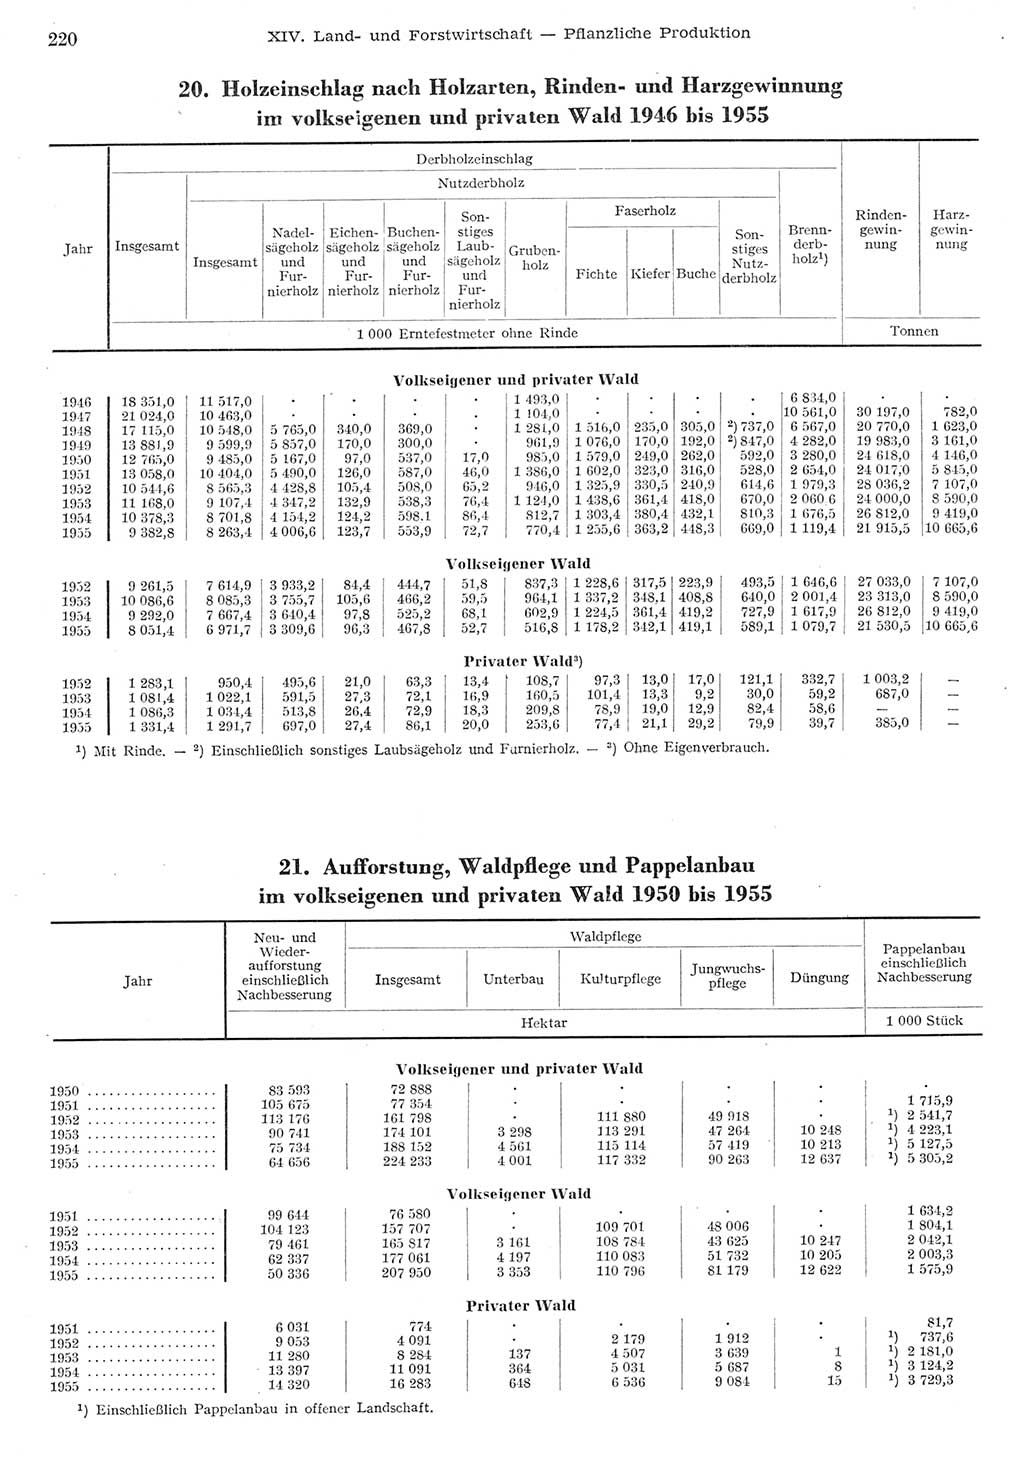 Statistisches Jahrbuch der Deutschen Demokratischen Republik (DDR) 1955, Seite 220 (Stat. Jb. DDR 1955, S. 220)